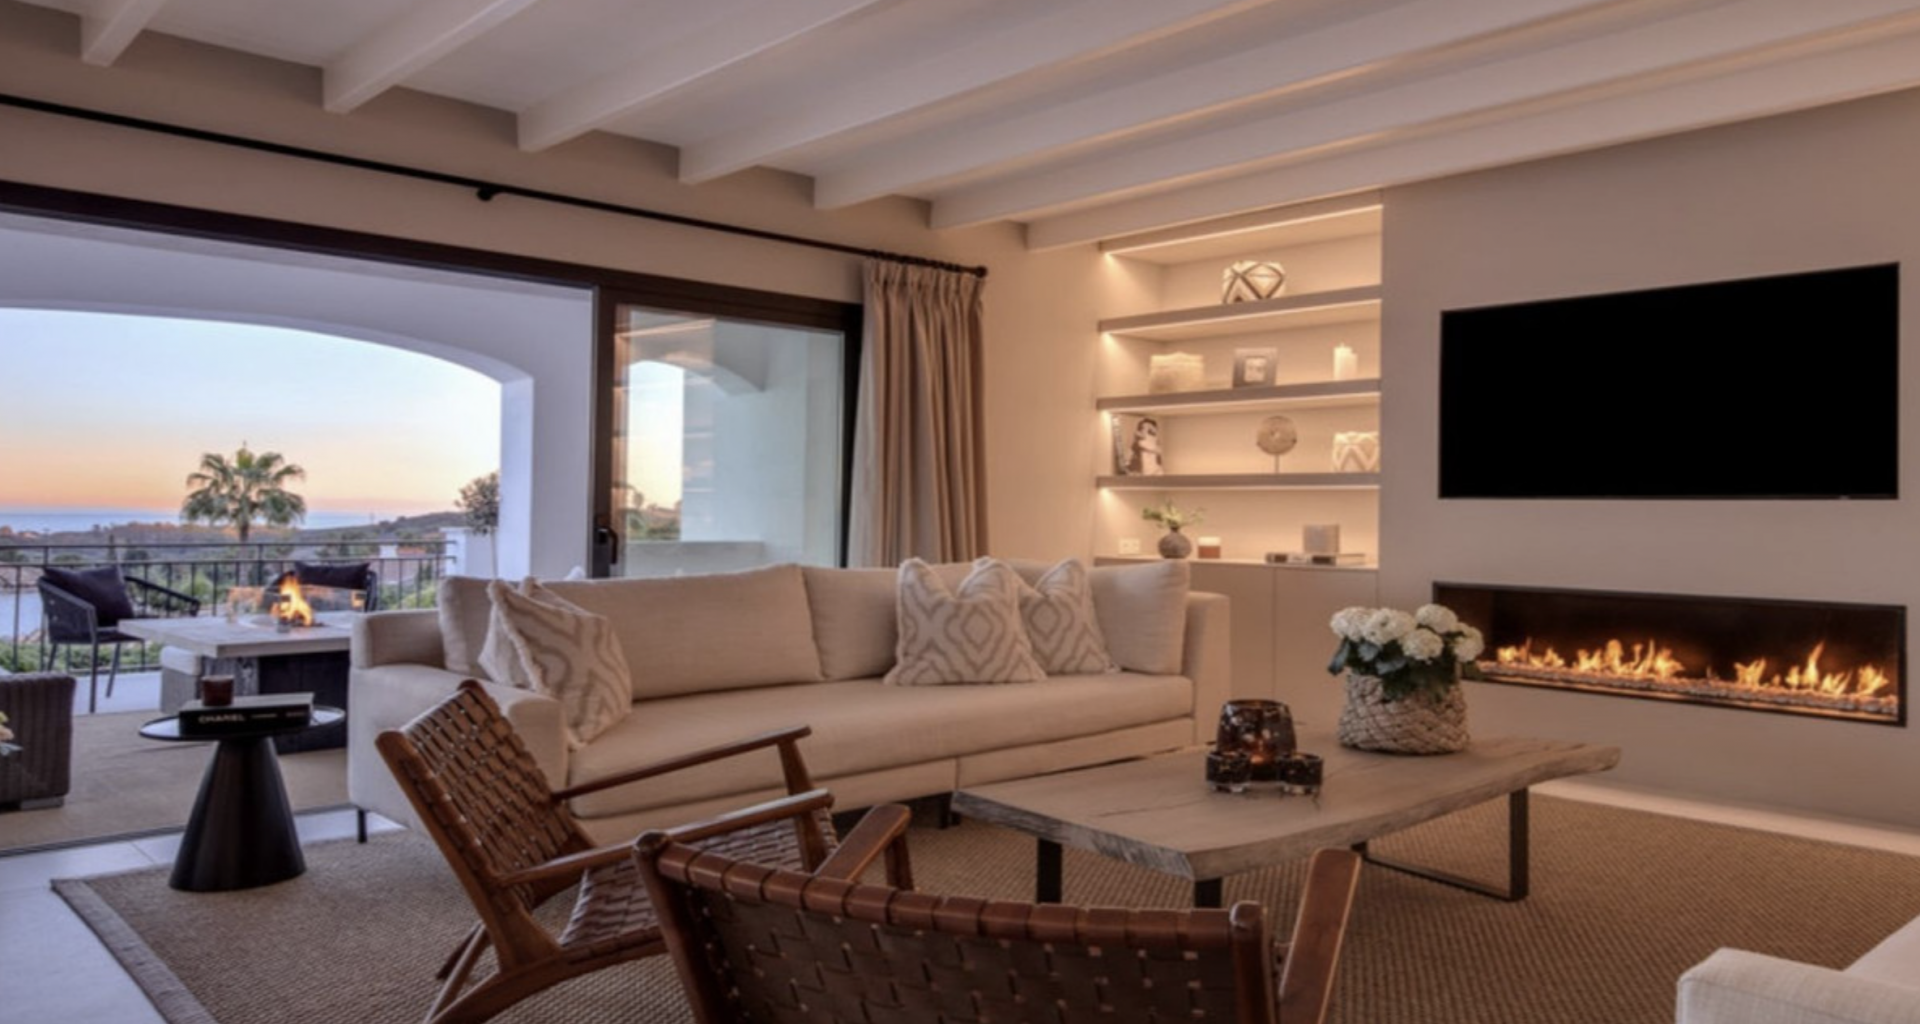 Villa de estilo andaluz en Paraiso Alto completamente reformada con impresionantes vistas panorámicas al mar